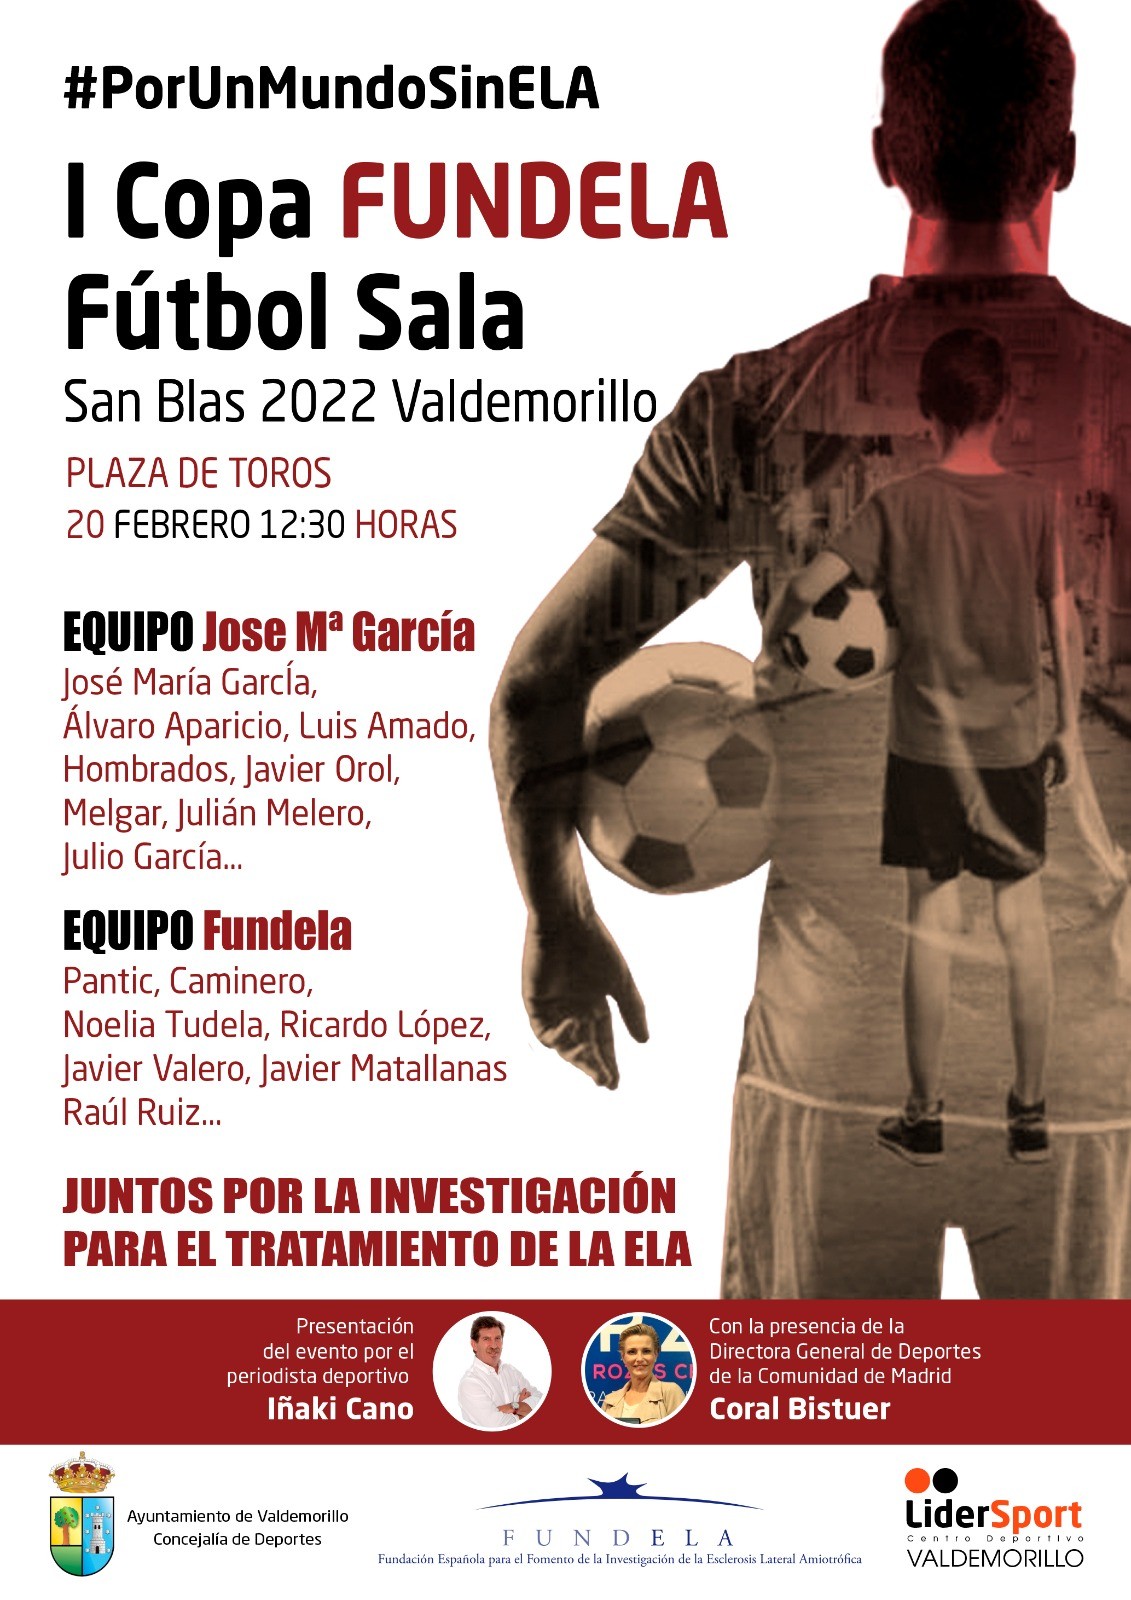 Deporte y solidaridad puntúan alto en Valdemorillo con la disputa este domingo de la I Copa FUNDELA de Fútbol Sala San Blas 2022